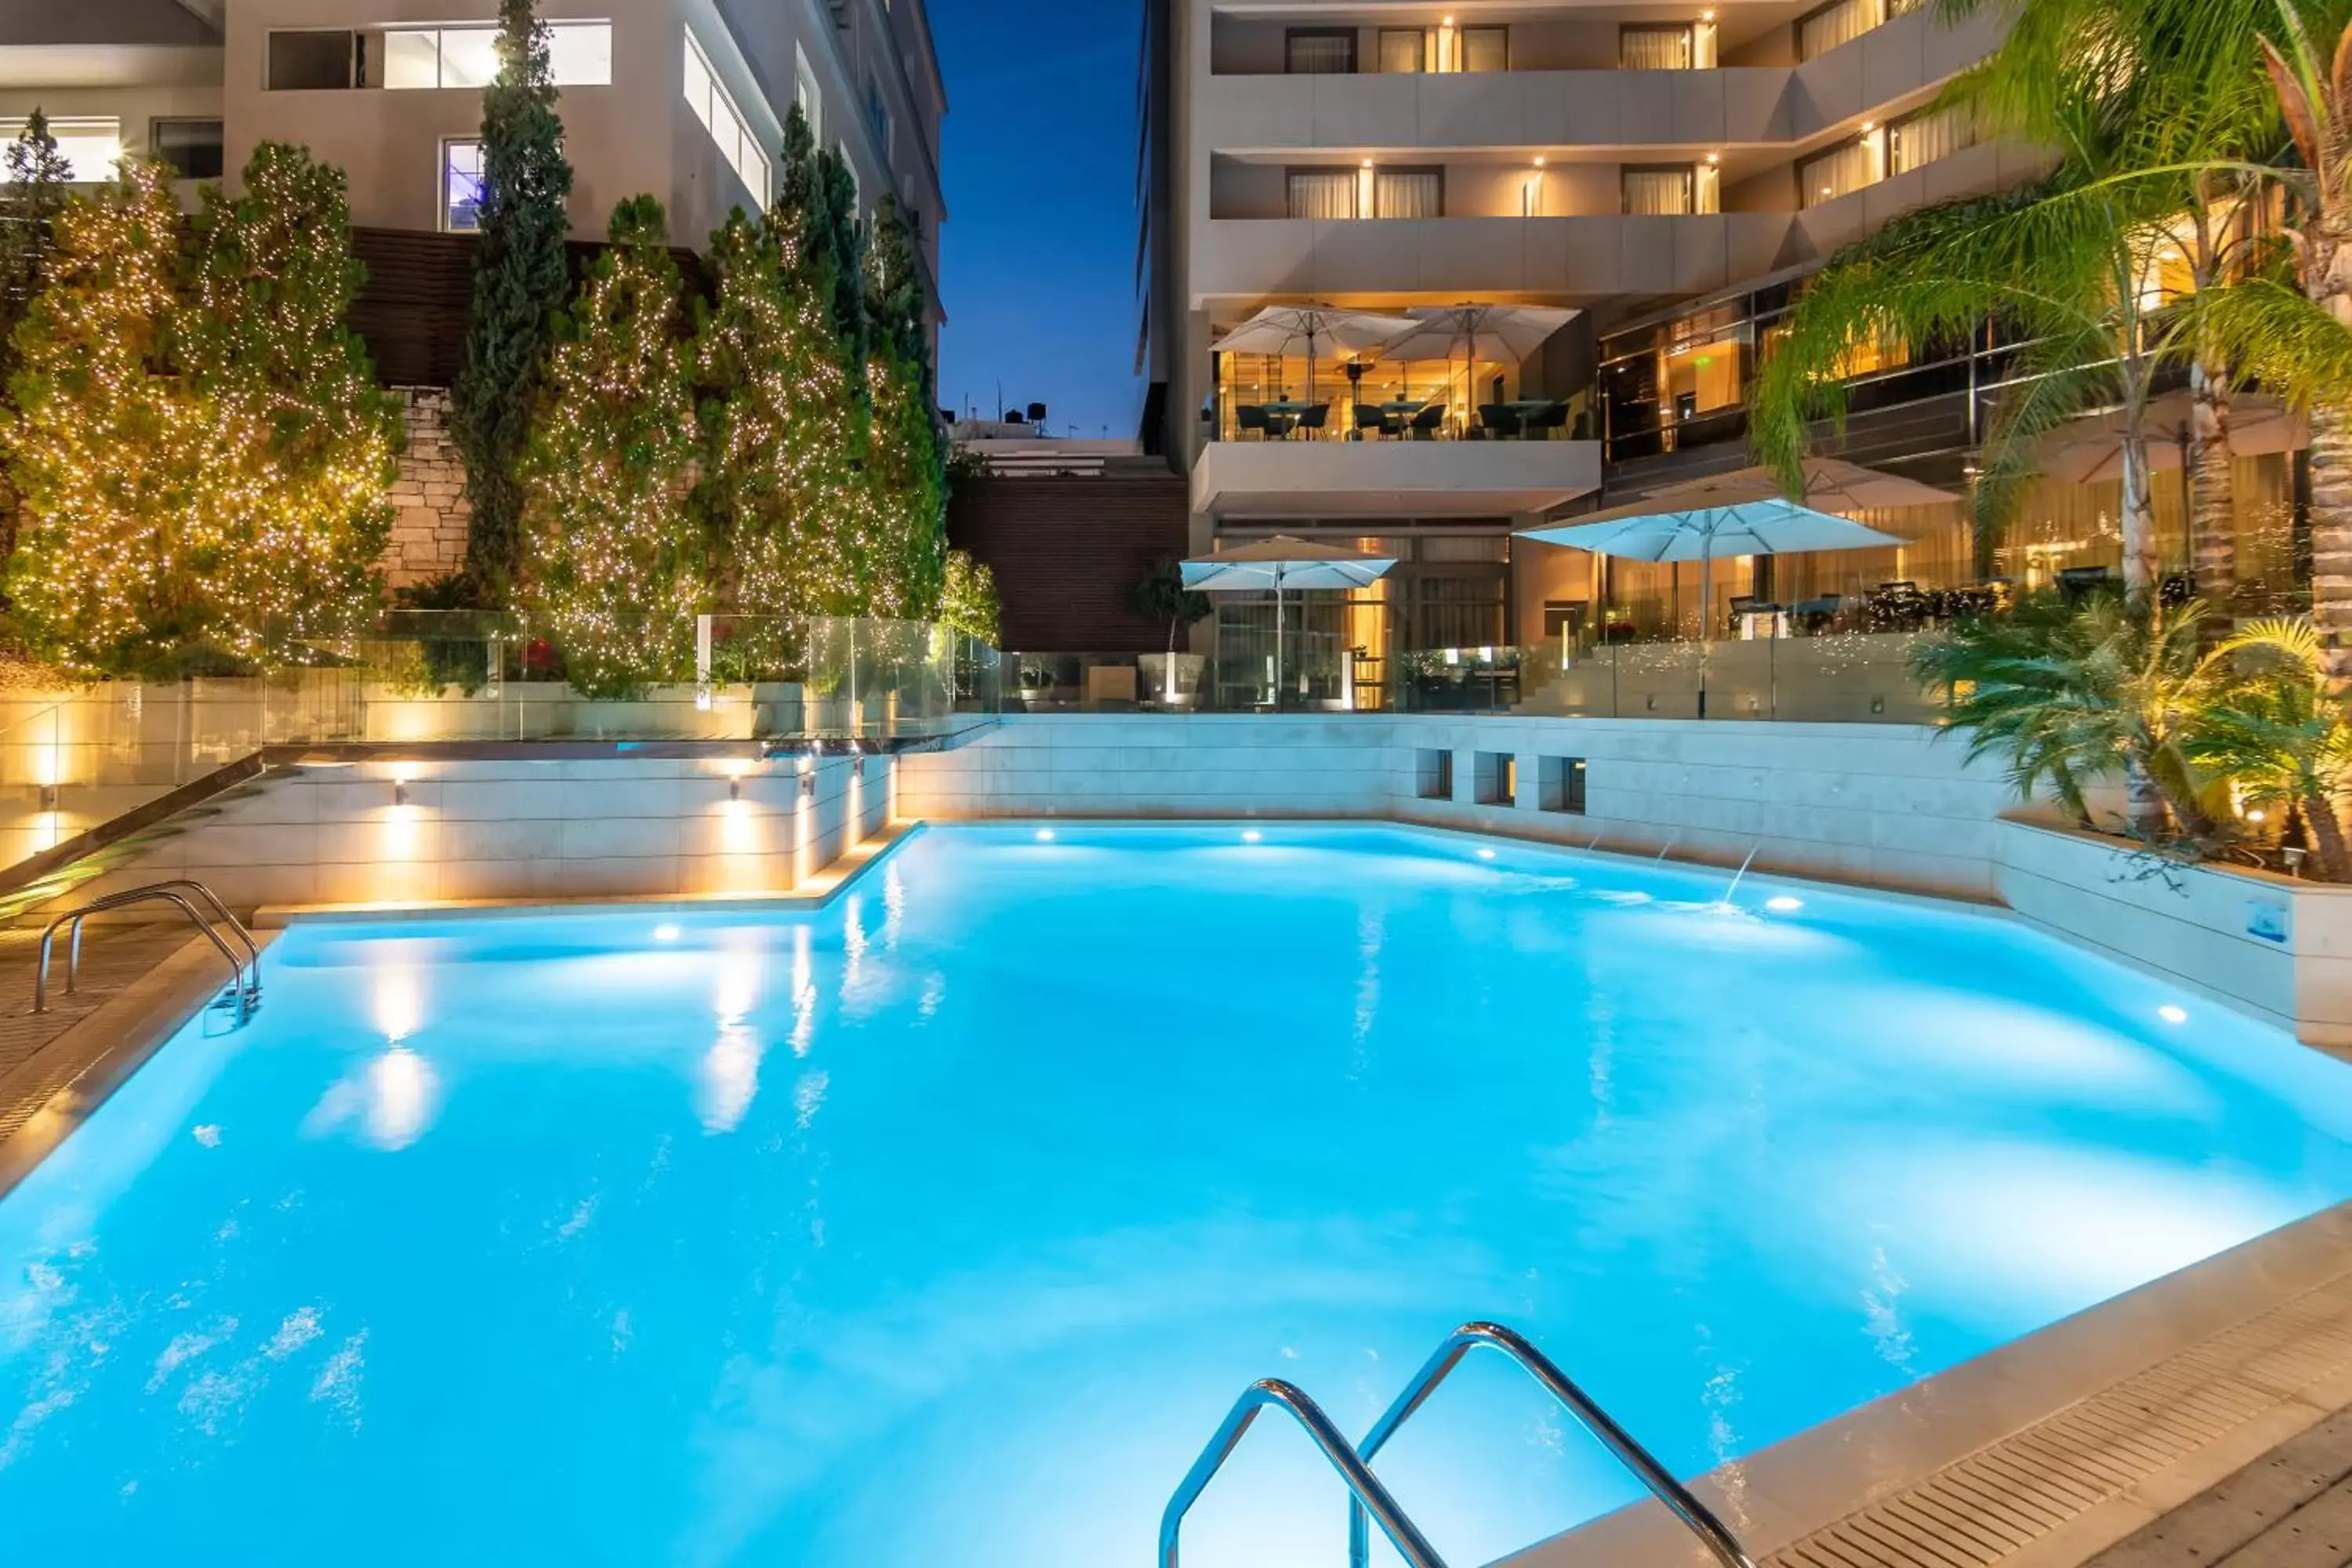 Pool view, Swimming Pool in Galaxy Iraklio Hotel